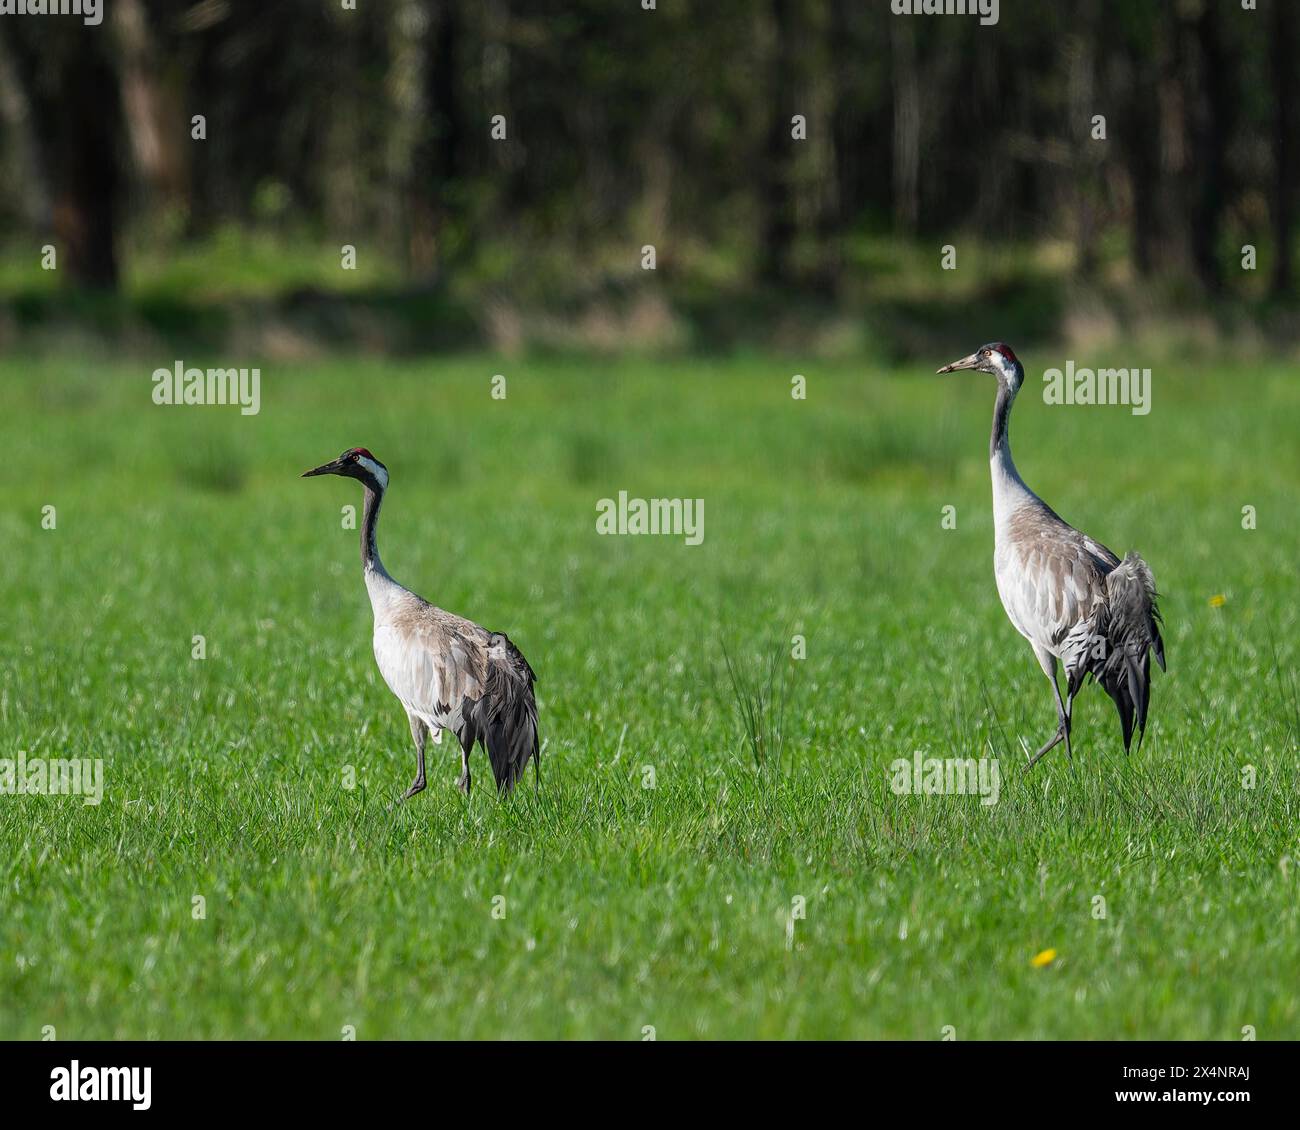 Grue (Grus grus), deux oiseaux adultes debout dans un pré, basse-Saxe, Allemagne, Europe Banque D'Images